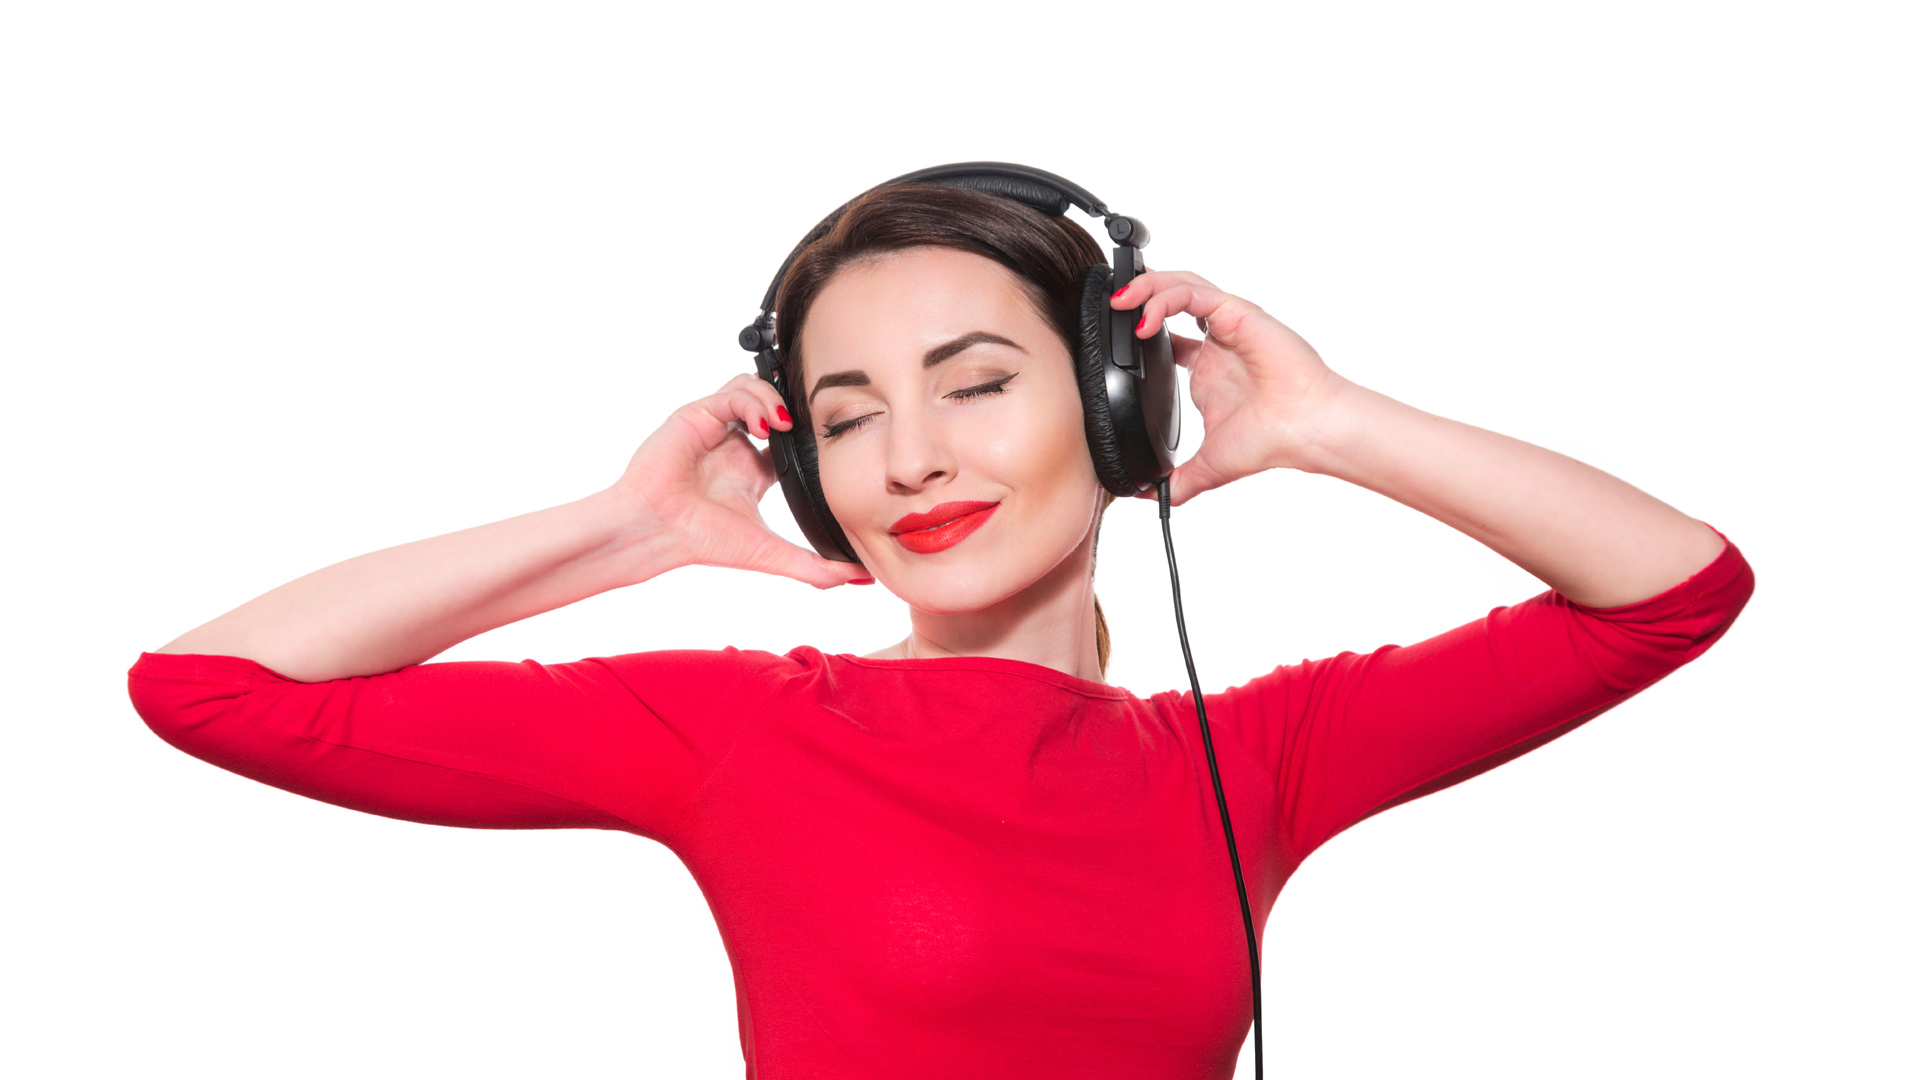 Quienes escuchan sus canciones favoritas luego de una cirugía requieren de menos calmantes y se vuelven más valientes